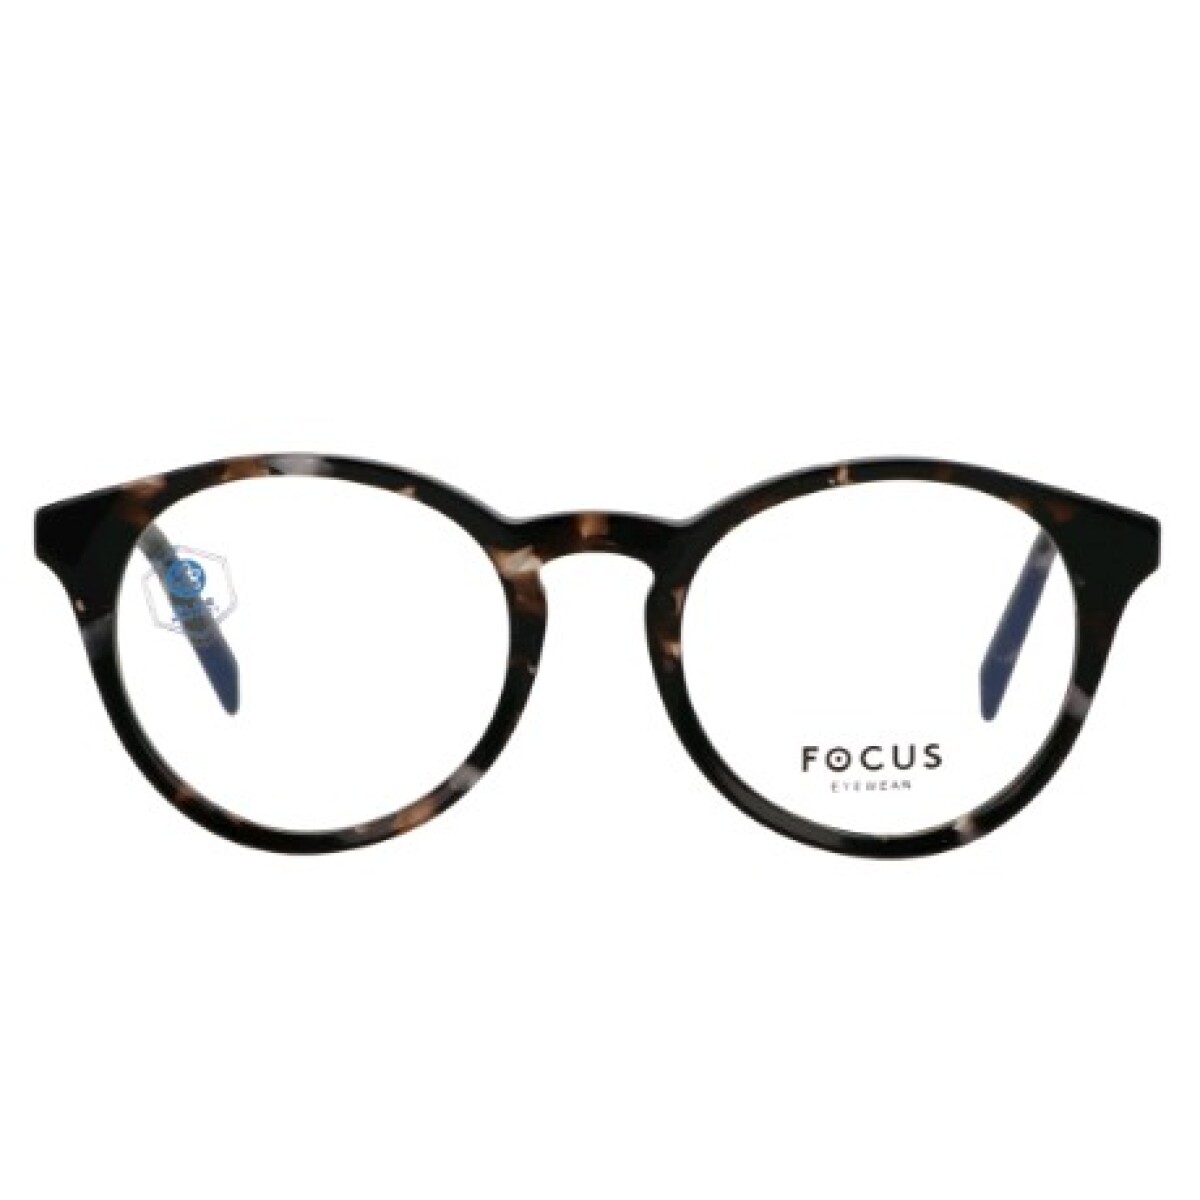 Focus Premium 376 Carey 